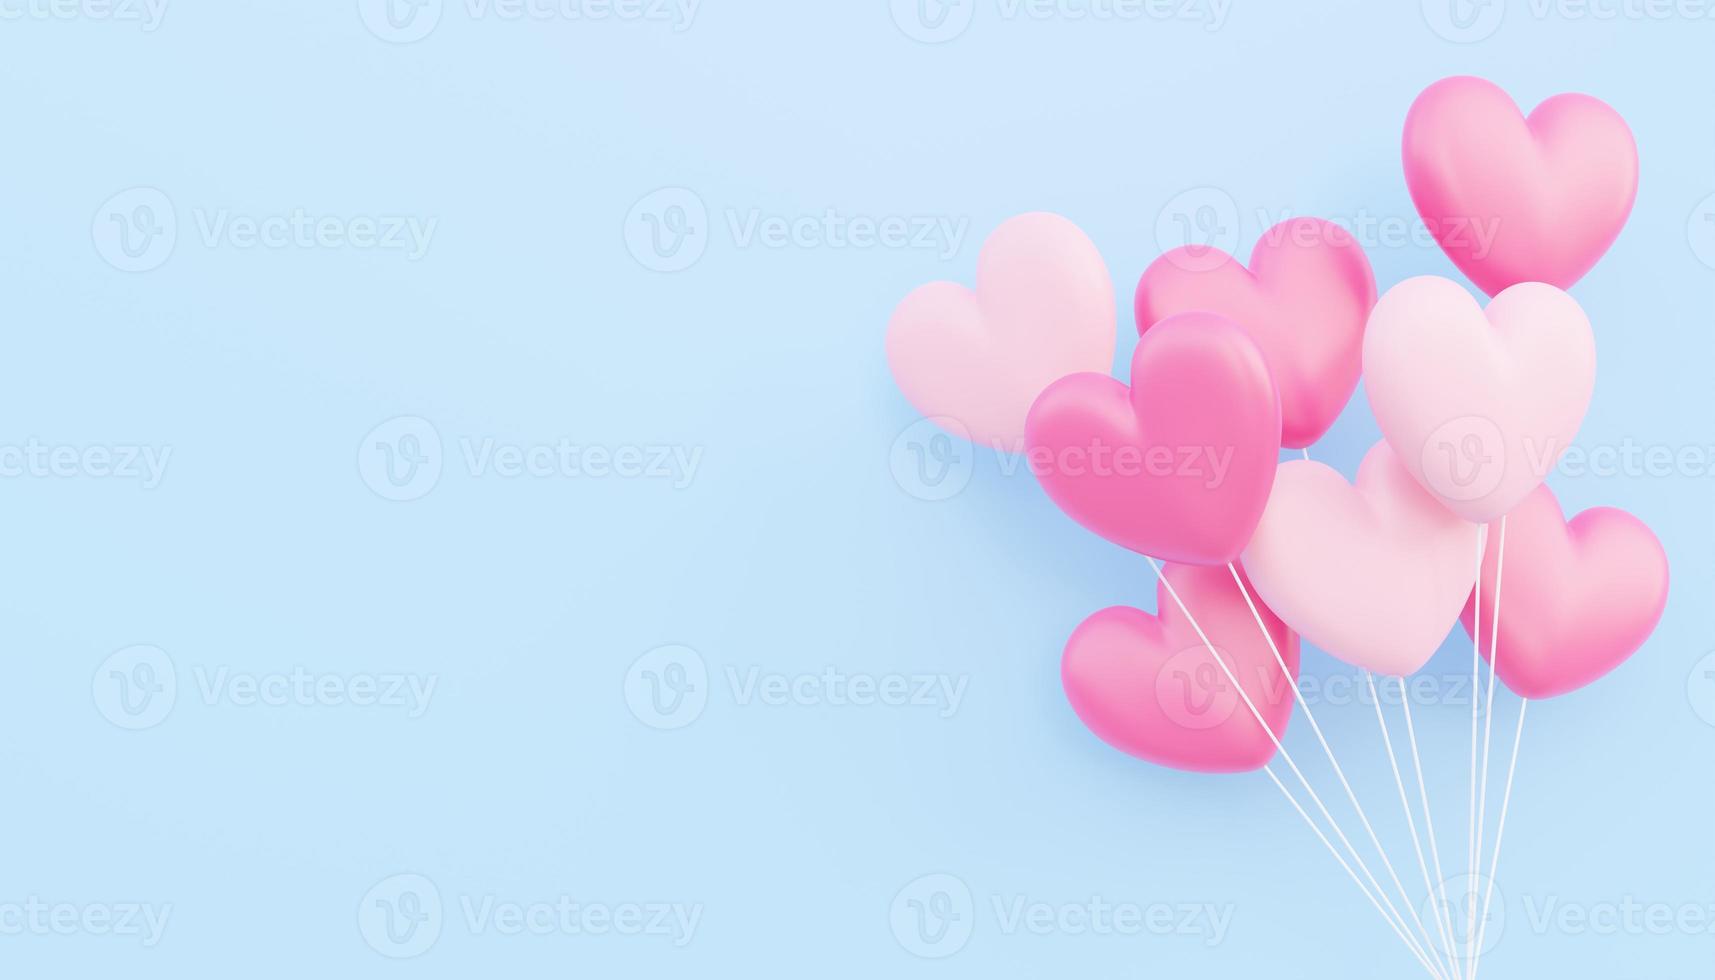 San Valentino, concetto di amore, bouquet di palloncini a forma di cuore rosa e bianco 3d che galleggia su sfondo blu foto